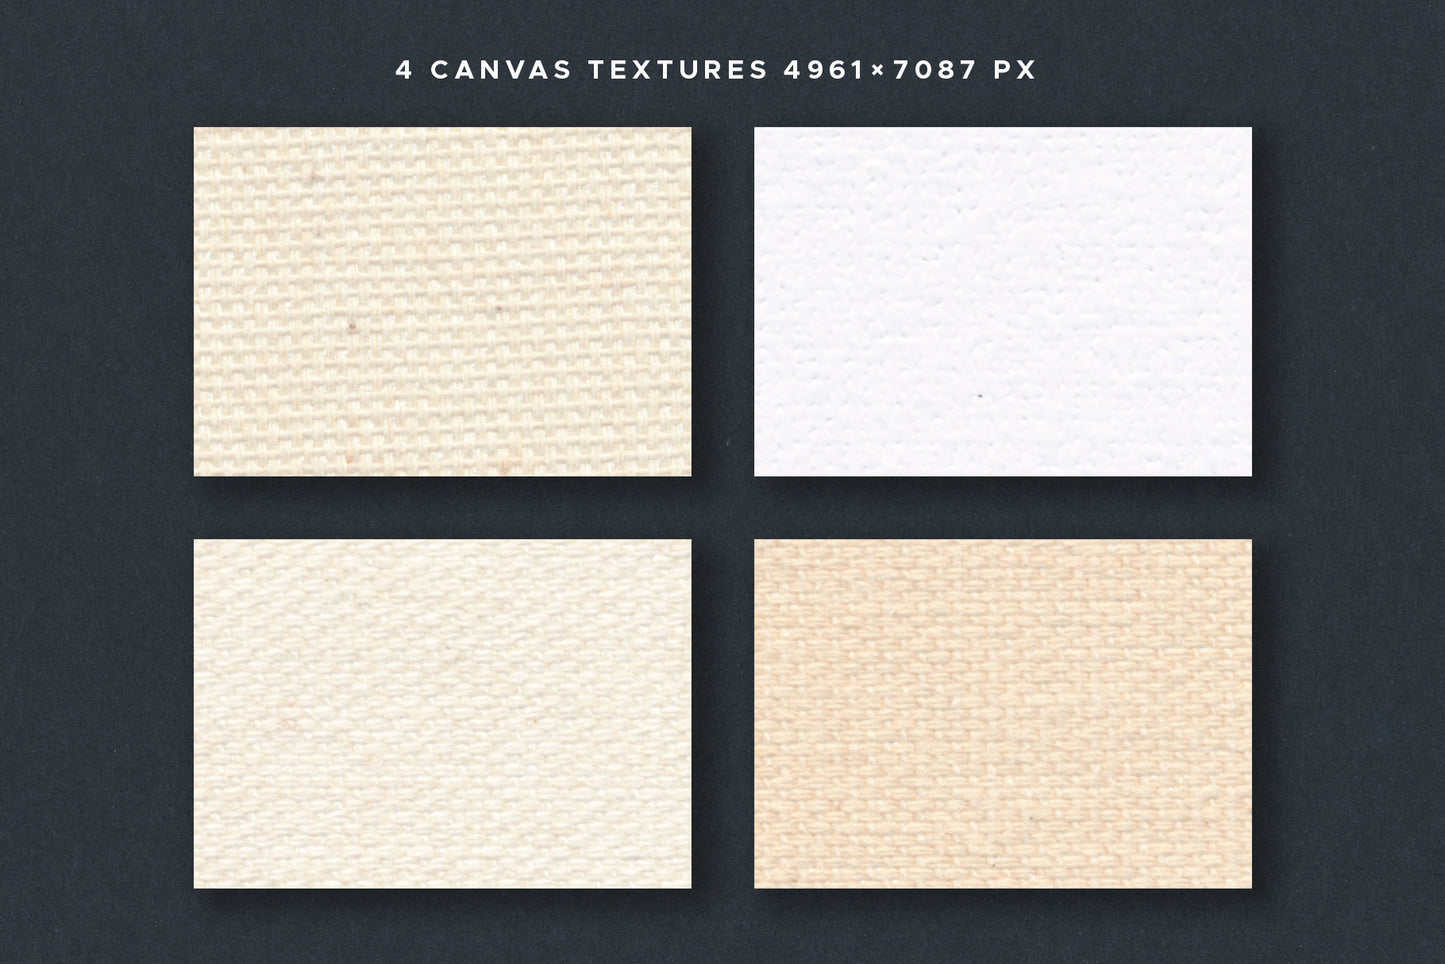 PAPER & CANVAS Texture Backgrounds